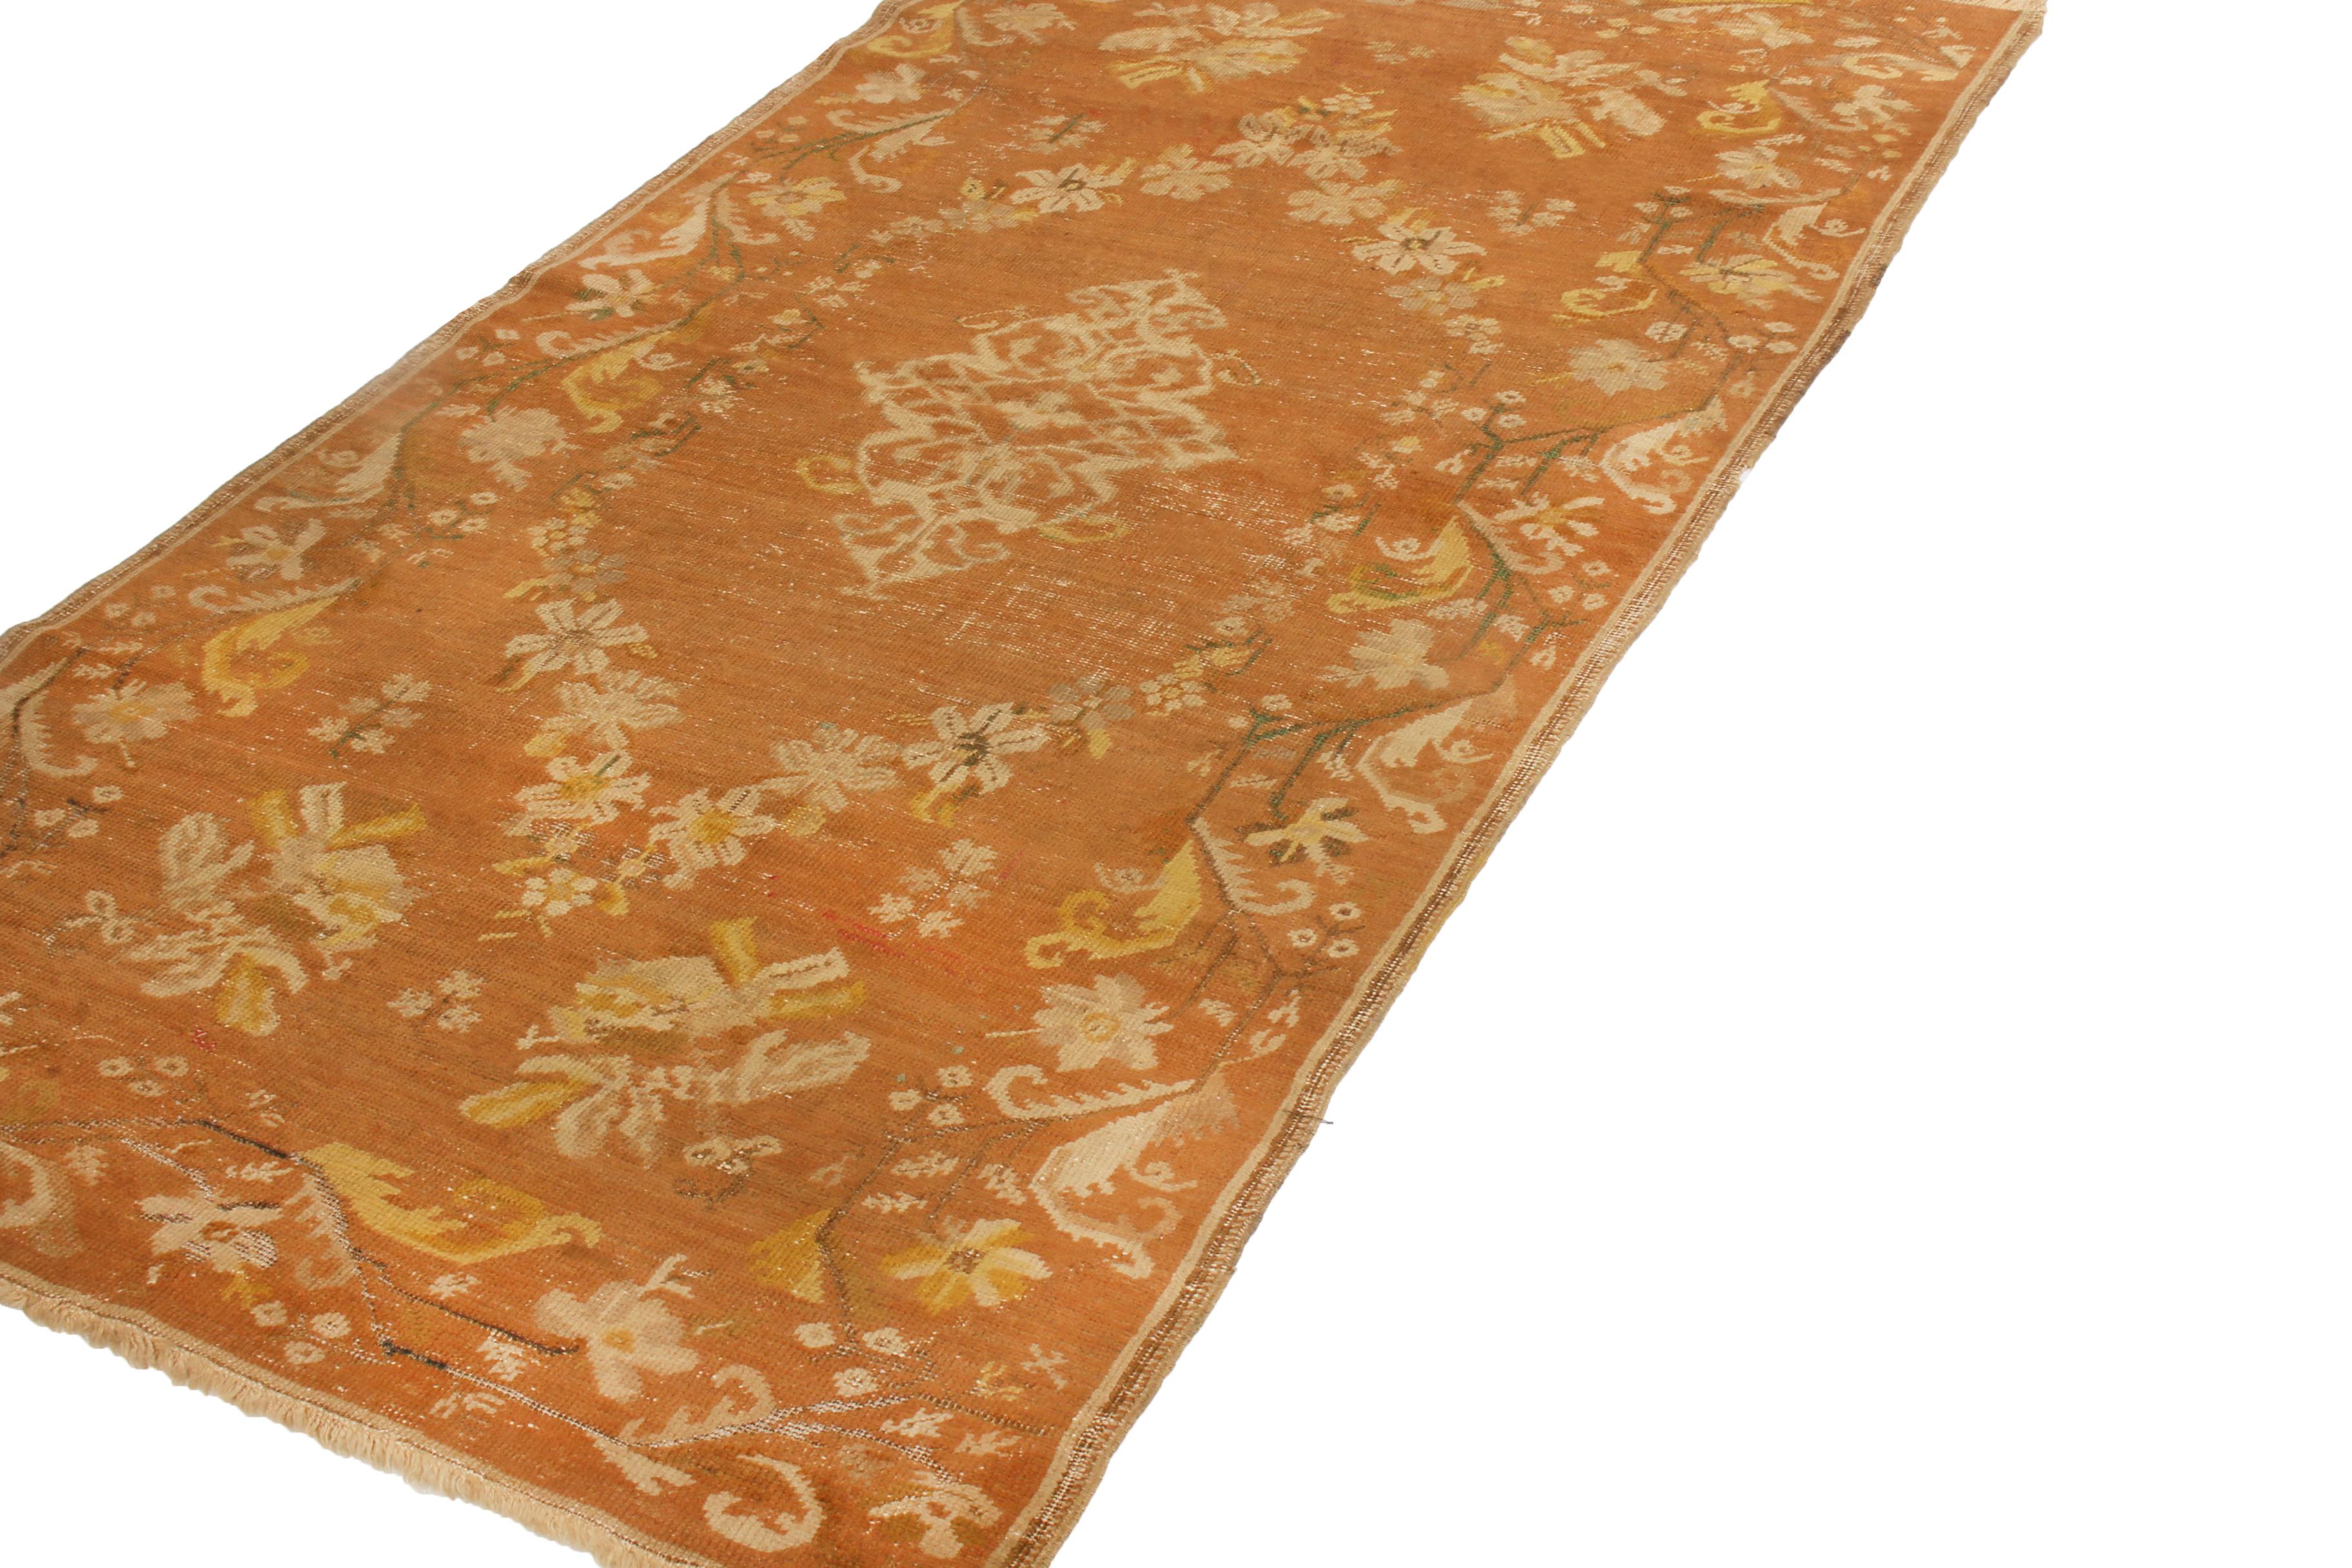 Dieser antike, traditionelle Gordas-Teppich stammt aus der Türkei (1890-1900) und weist ein Medaillon-Feldmuster mit floralen Mustern auf, das an den Art-déco-Stil erinnert. Der handgeknüpfte, strapazierfähige Wollflor mit kupferbraunem Hintergrund